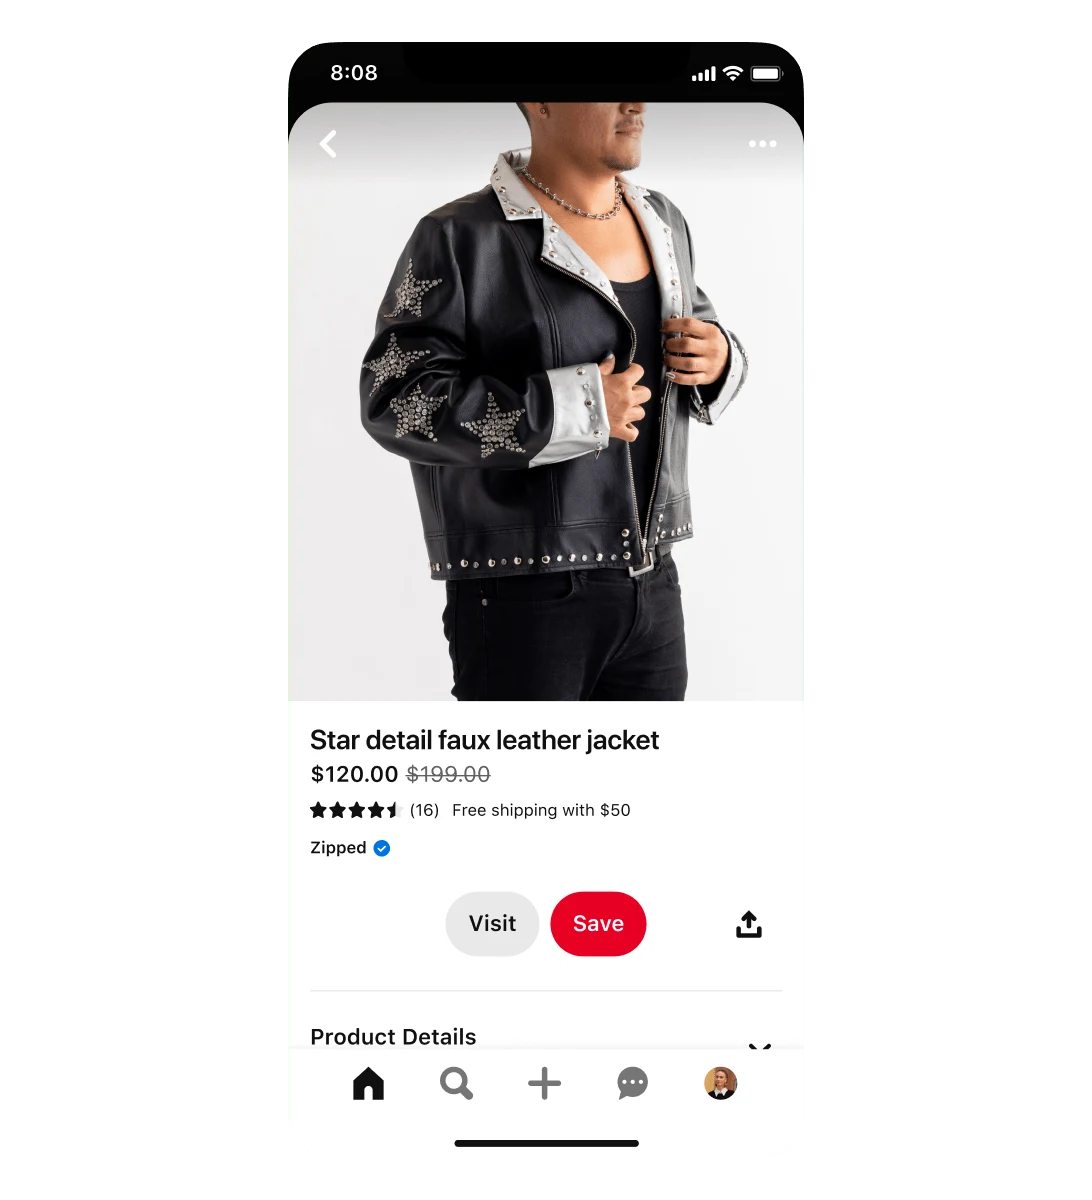 별 모양 디테일 장식이 있는 인조 가죽 재킷 쇼핑 광고의 모바일 뷰입니다. 재킷은 정가 $199에서 할인가 $120로 판매 중입니다. 재킷을 착용한 남성의 모습을 담은 광고입니다.